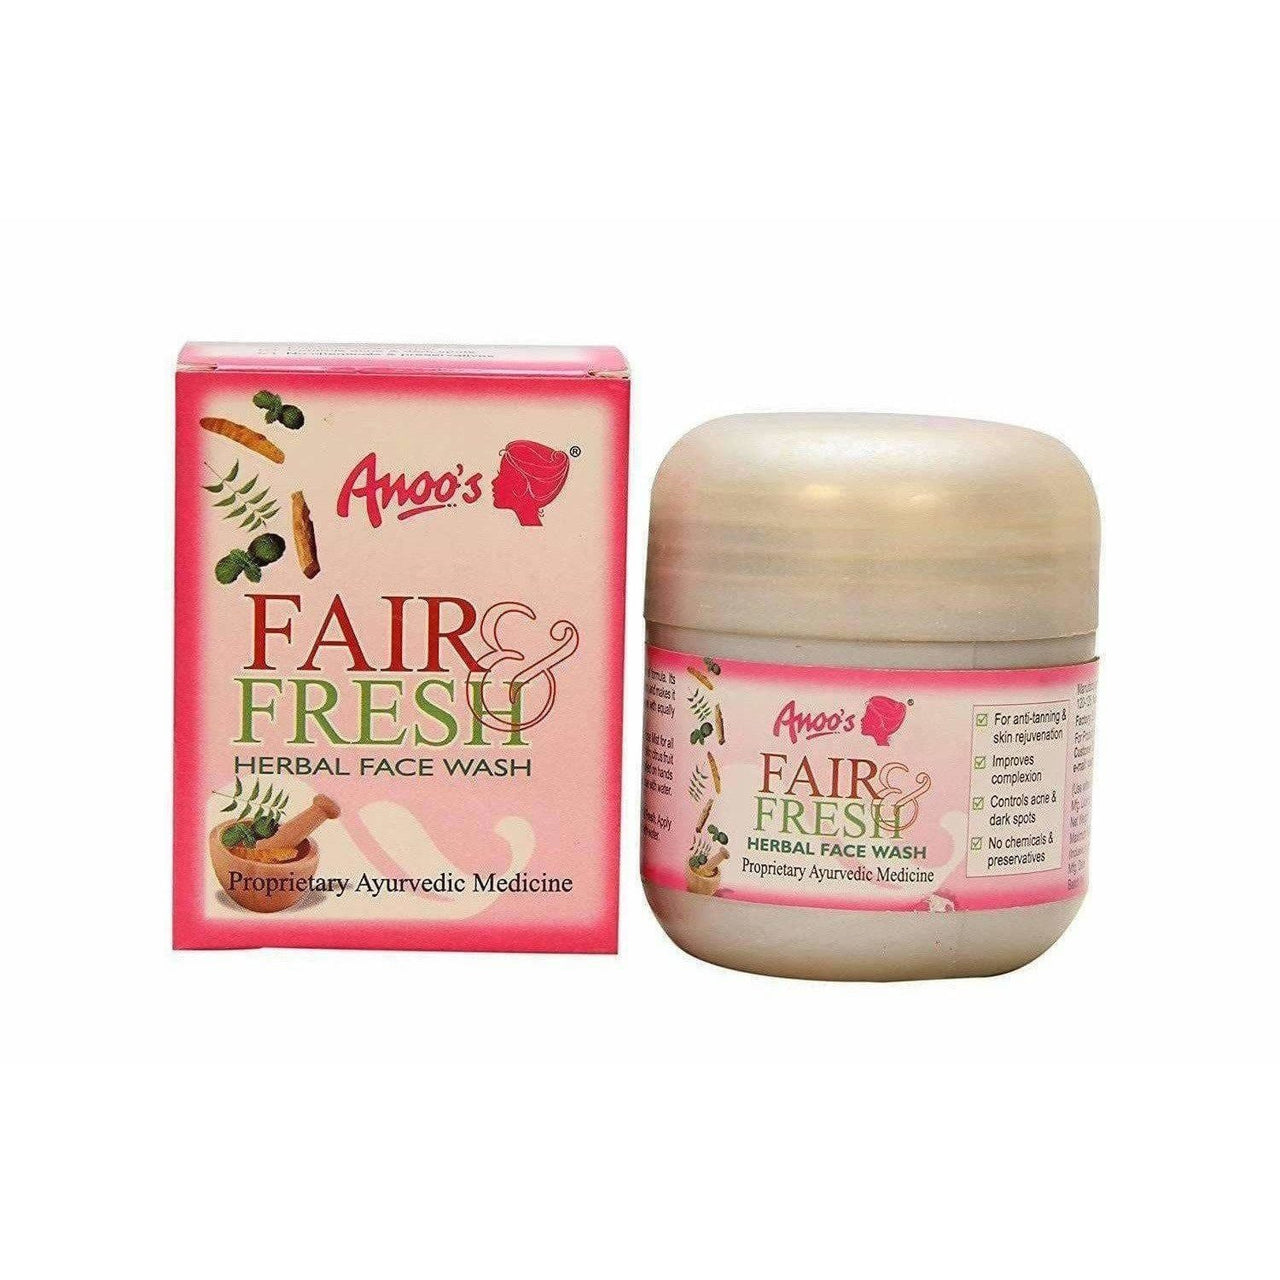 Anoos Fair and Fresh Herbal Face Wash - Distacart